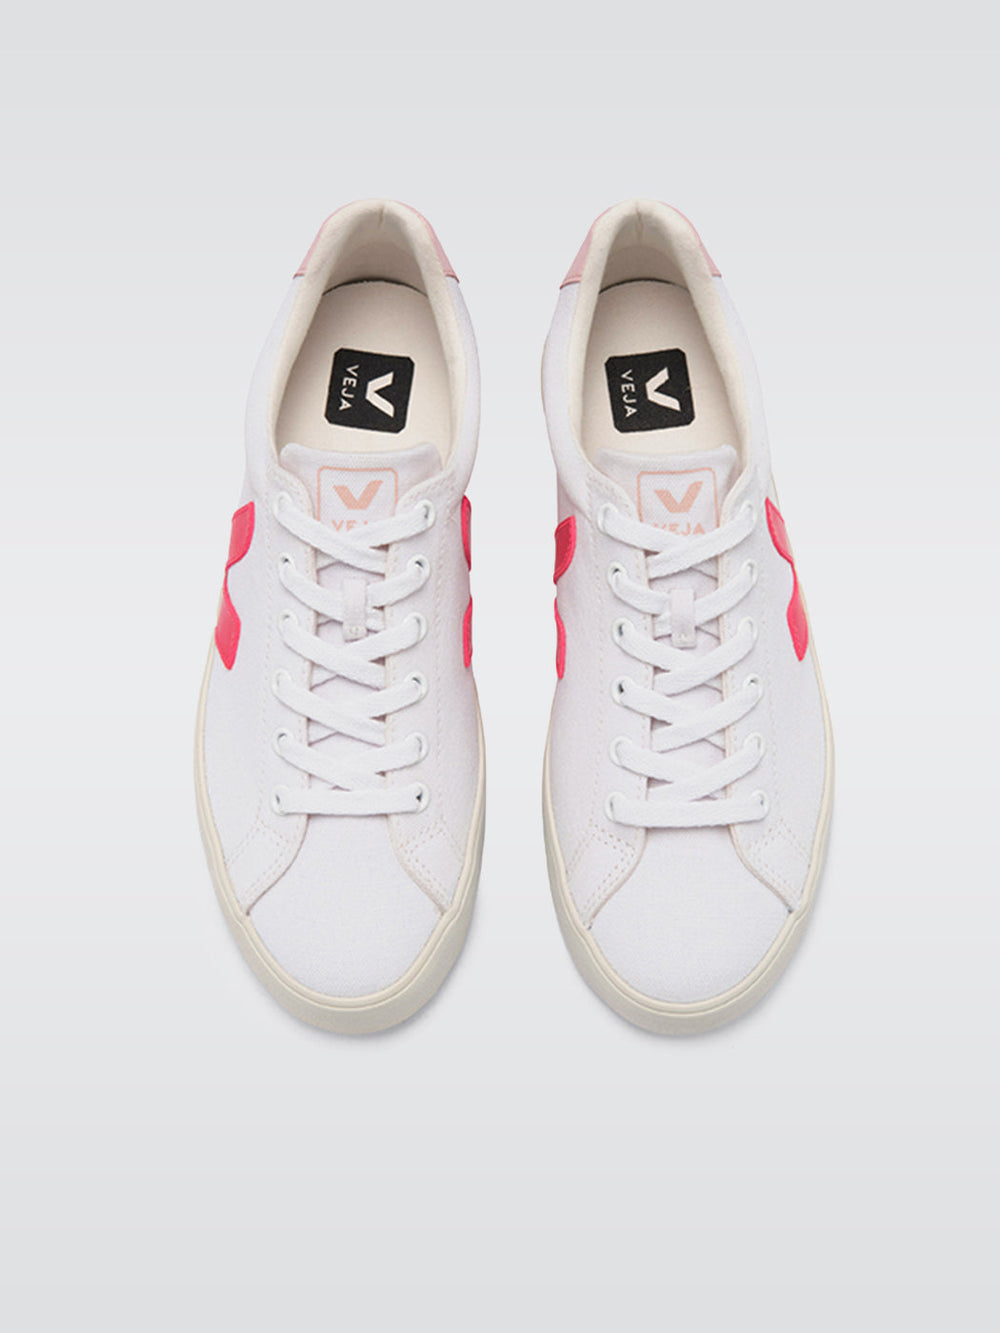 Esplar-se Canvas Low Top Sneaker - White-Rose-Fluo-Petale